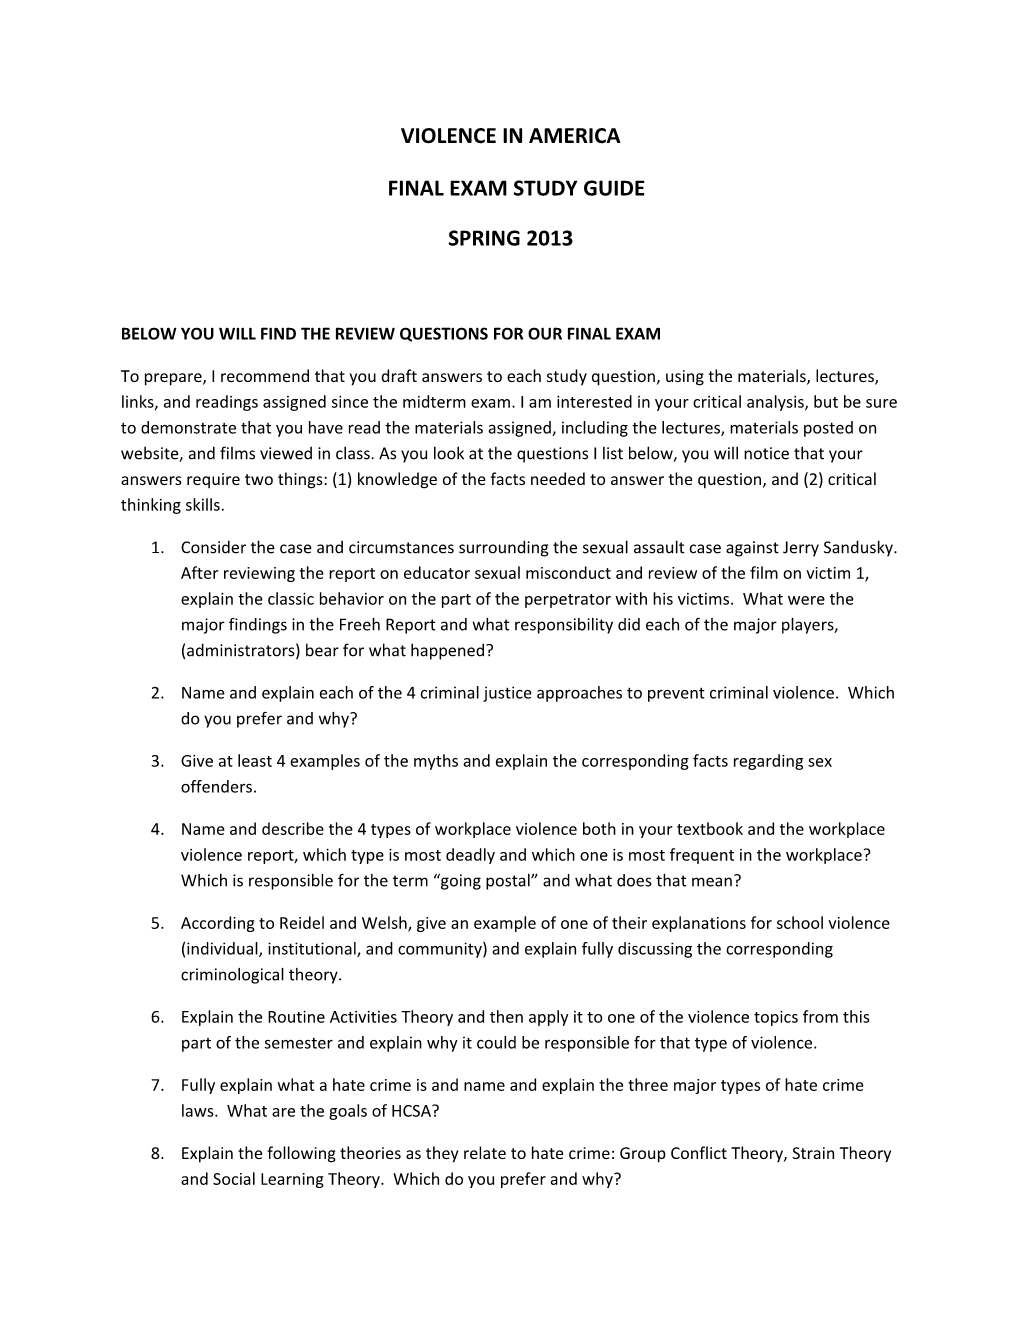 Final Exam Study Guide s2